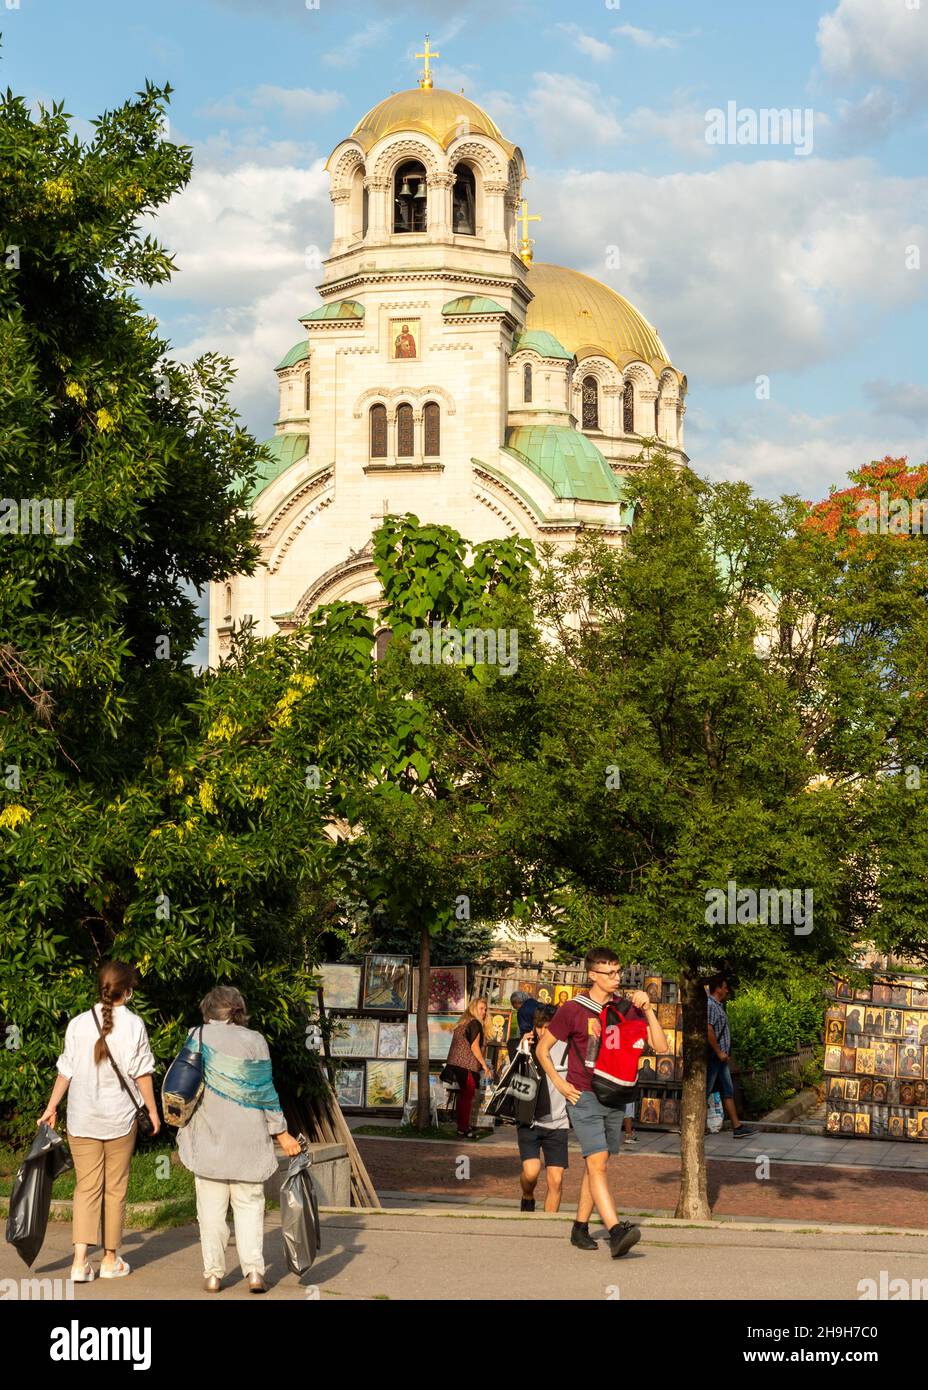 Vista della Cattedrale Alexander Nevsky e del mercato delle pulci dipinto a mano di Sofia, Bulgaria Foto Stock